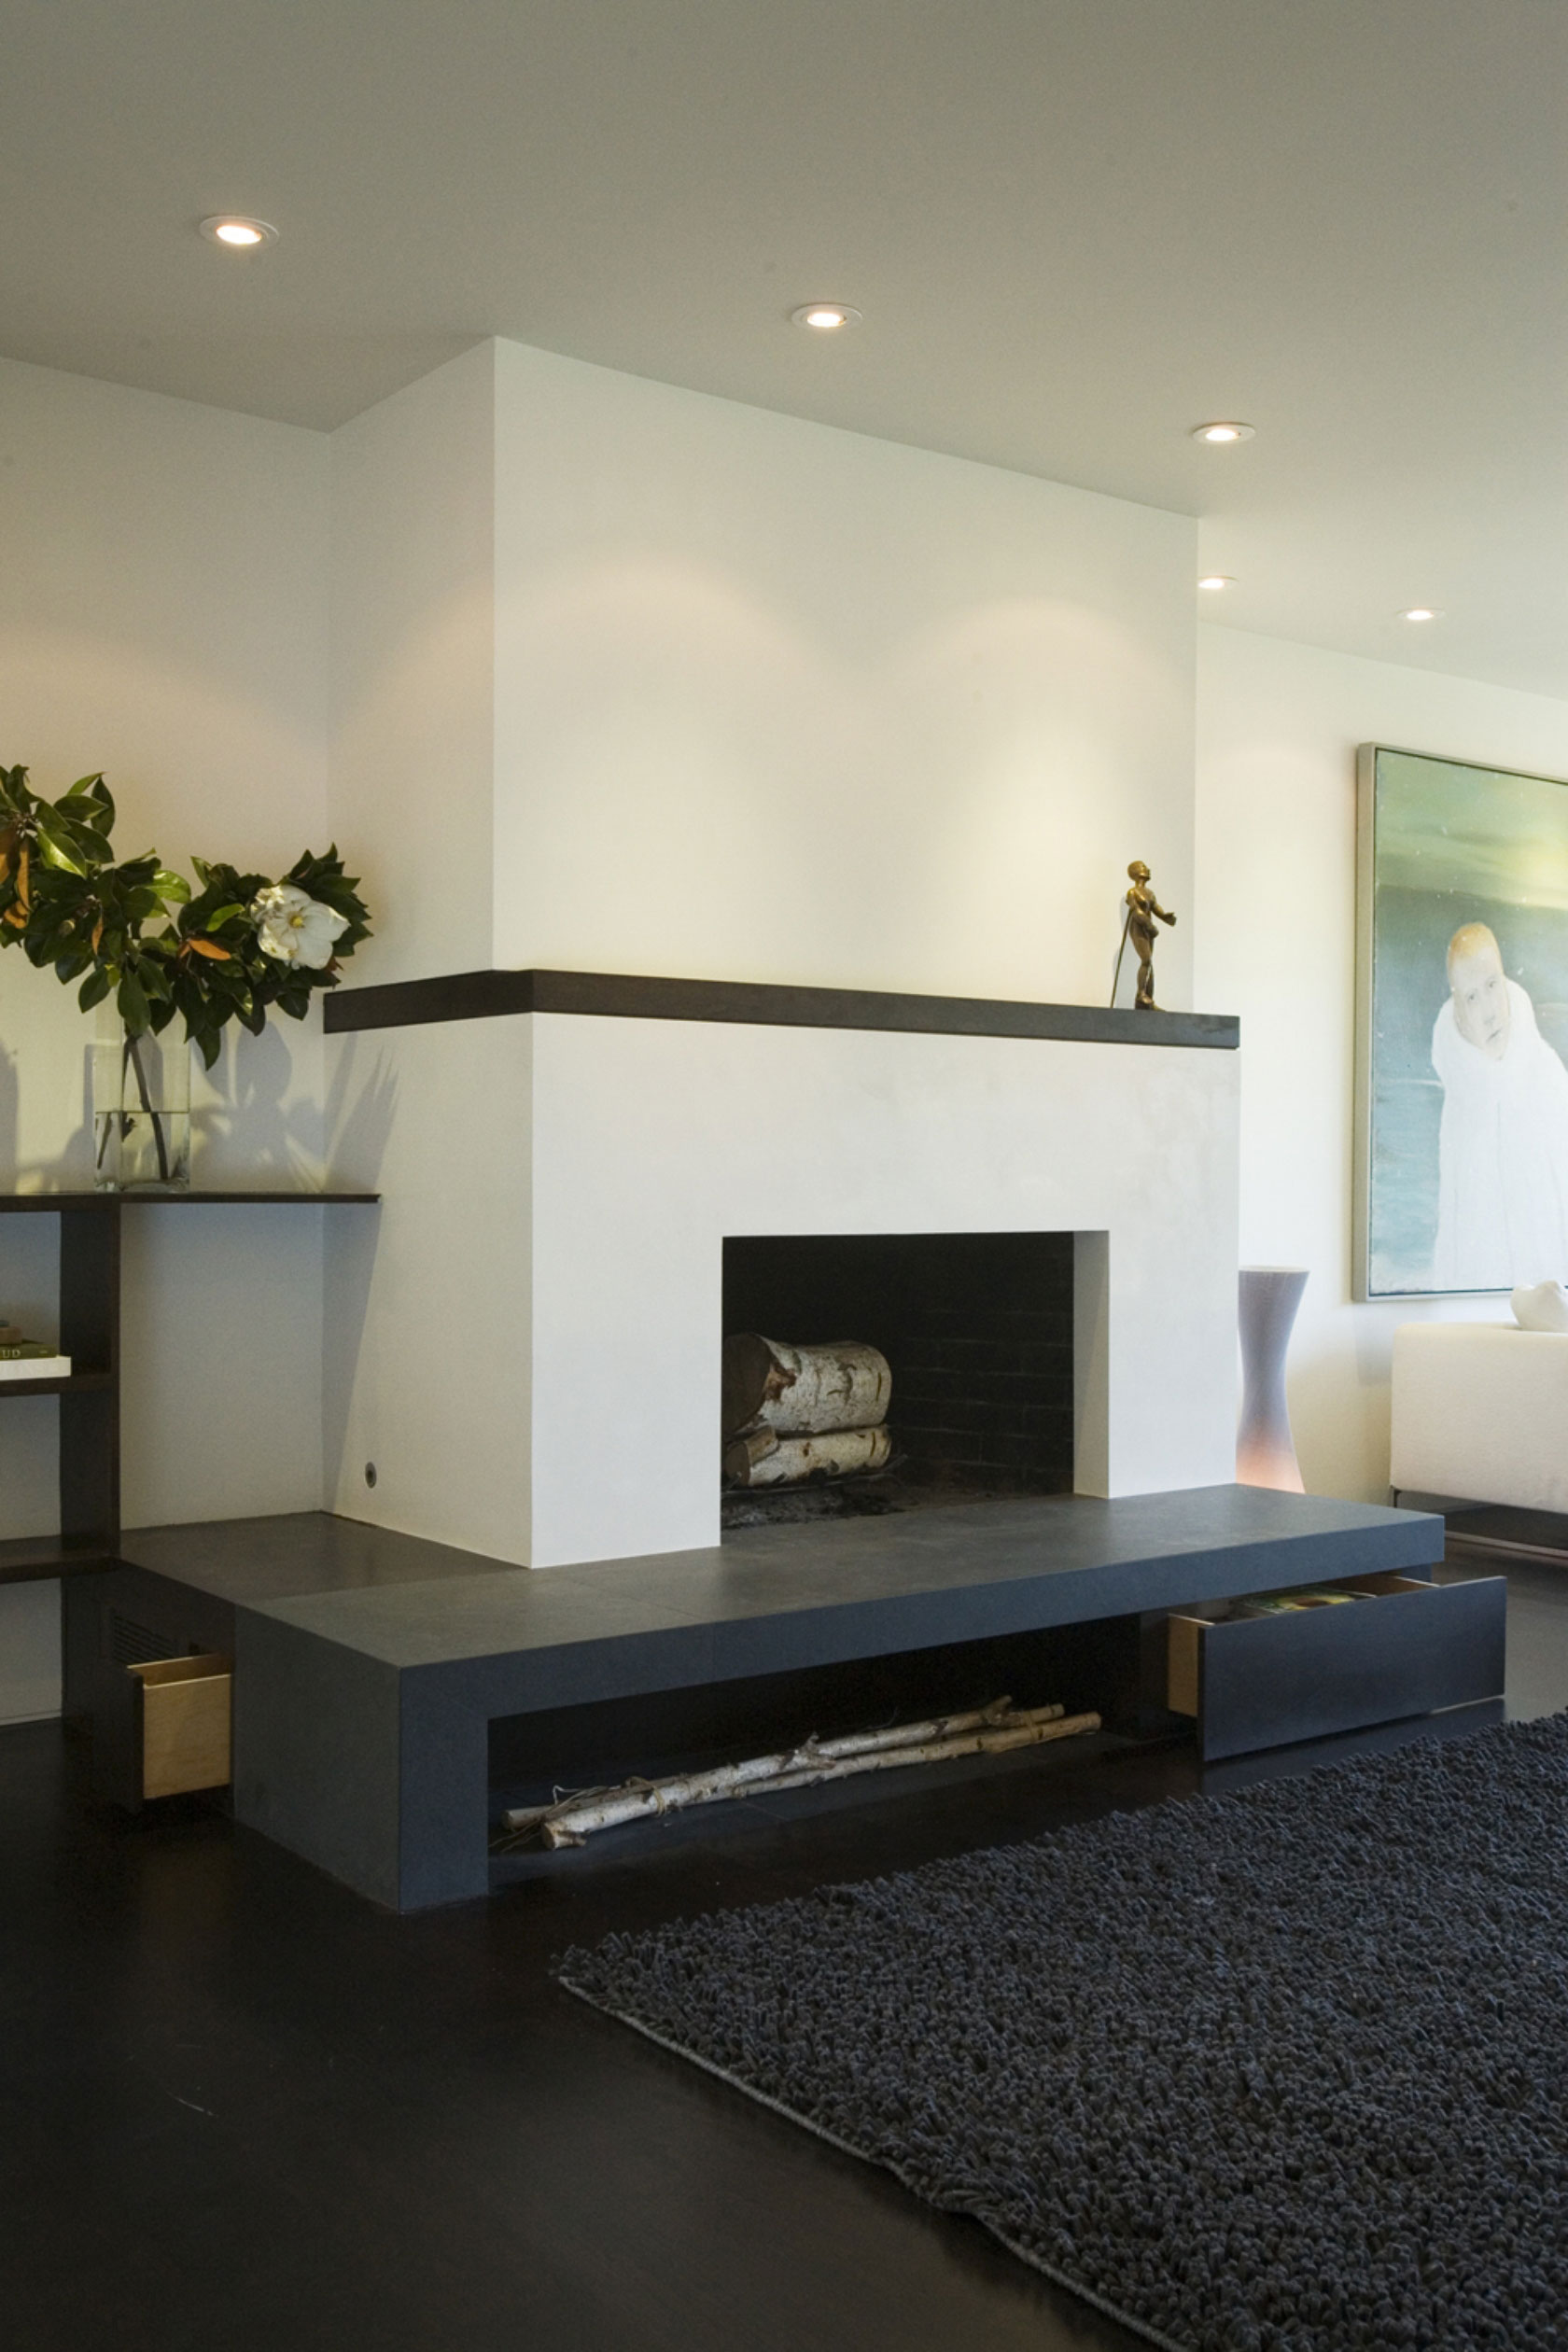 Сочетание чёрного и белого в интерьере апартаментов Alta Plaza от Jennifer Weiss Architecture, Сан-Франциско, США